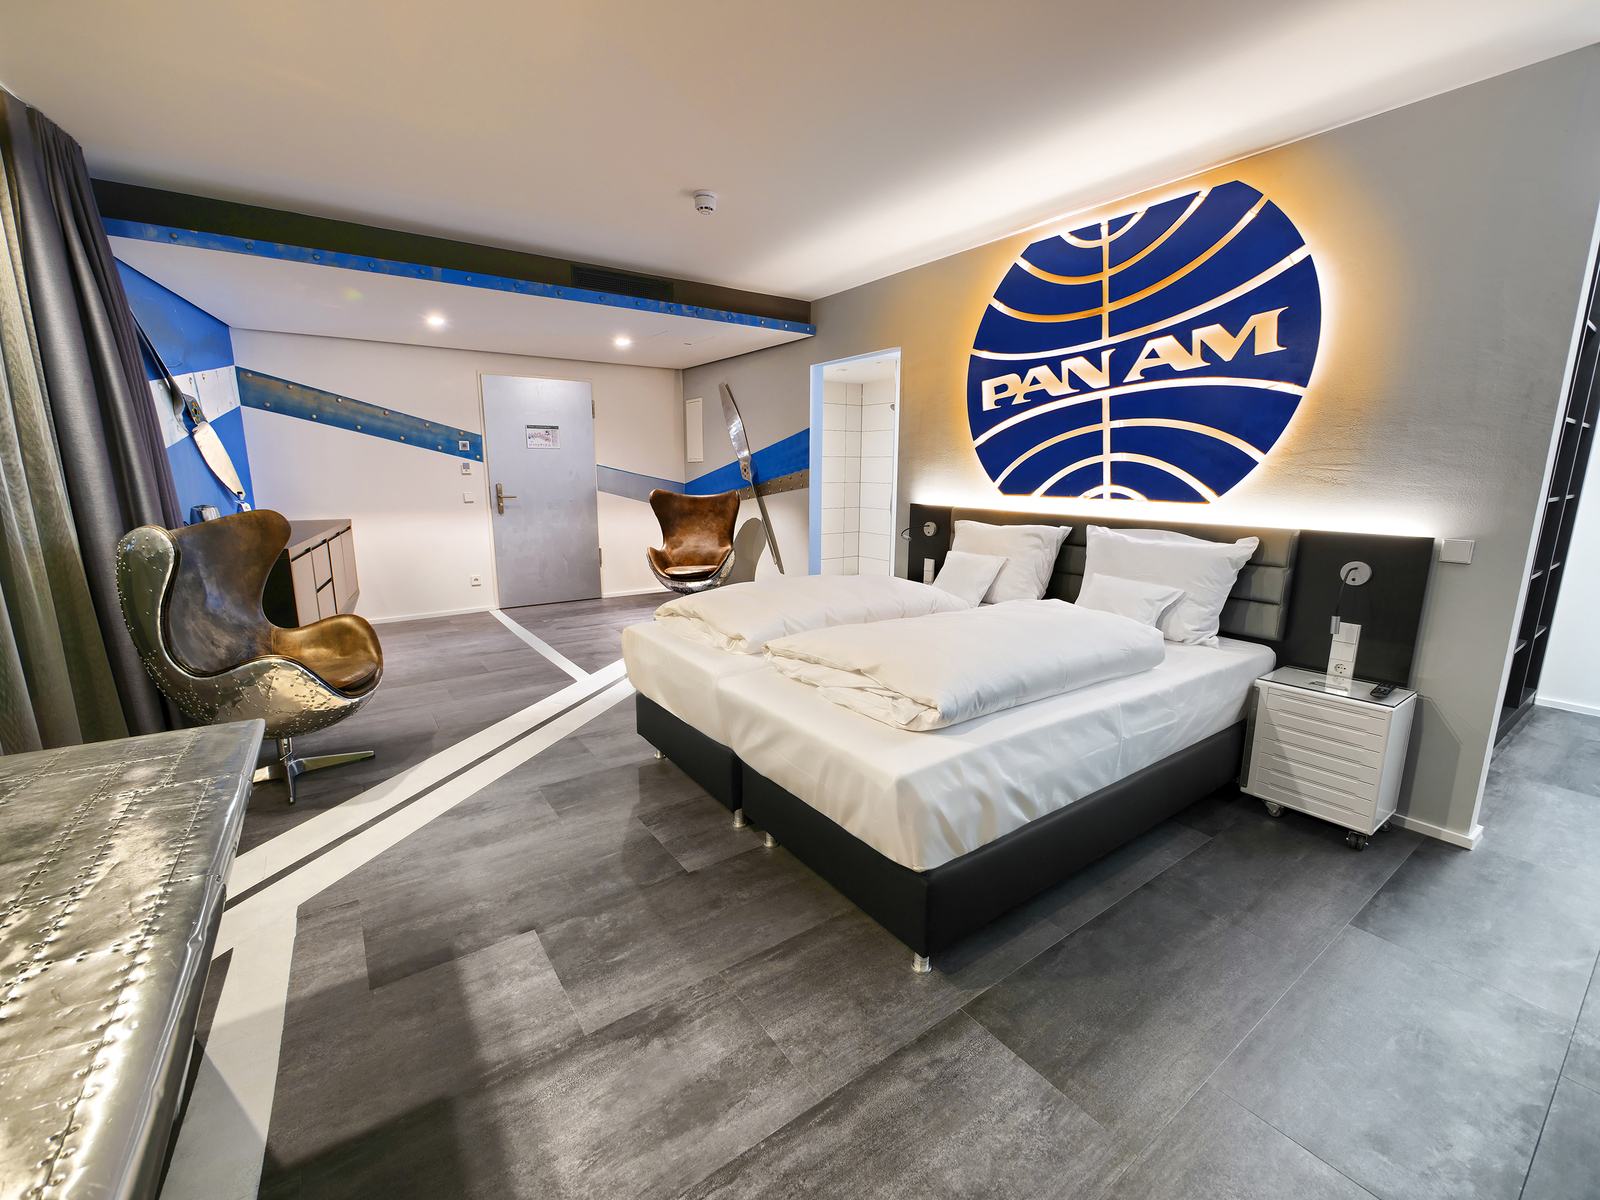 Themenzimmer Pan Am mit großem Doppelbett, Pan Am Logo über dem Bett in blau sowie zwei goldene Sessel.